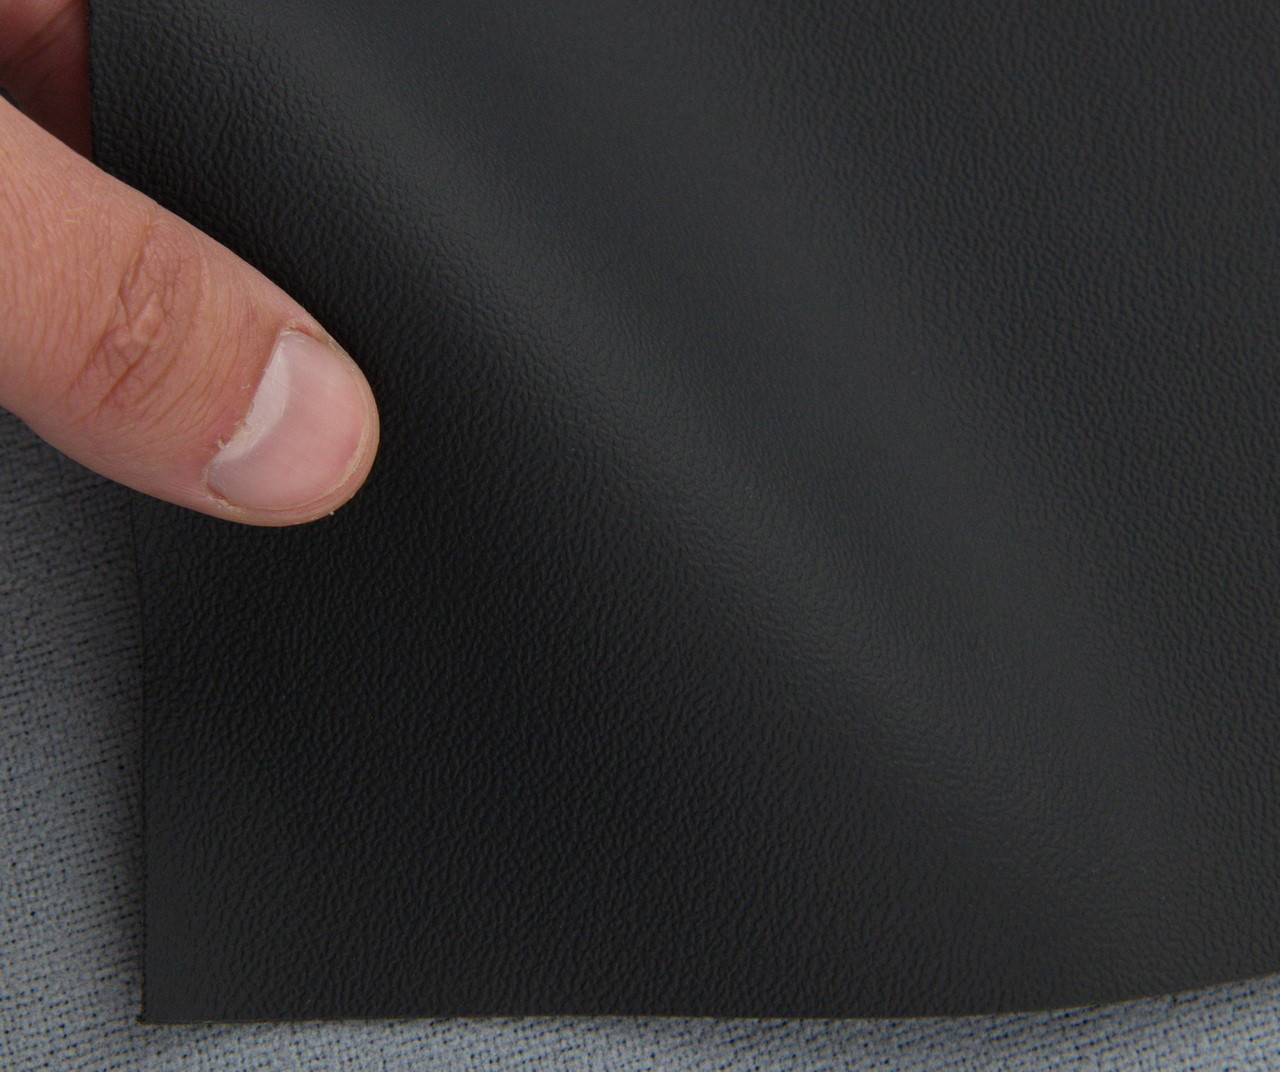 Биэластик, кожзам тягучий зернистый цвет черный MT-51, шир. 1,42м детальная фотка